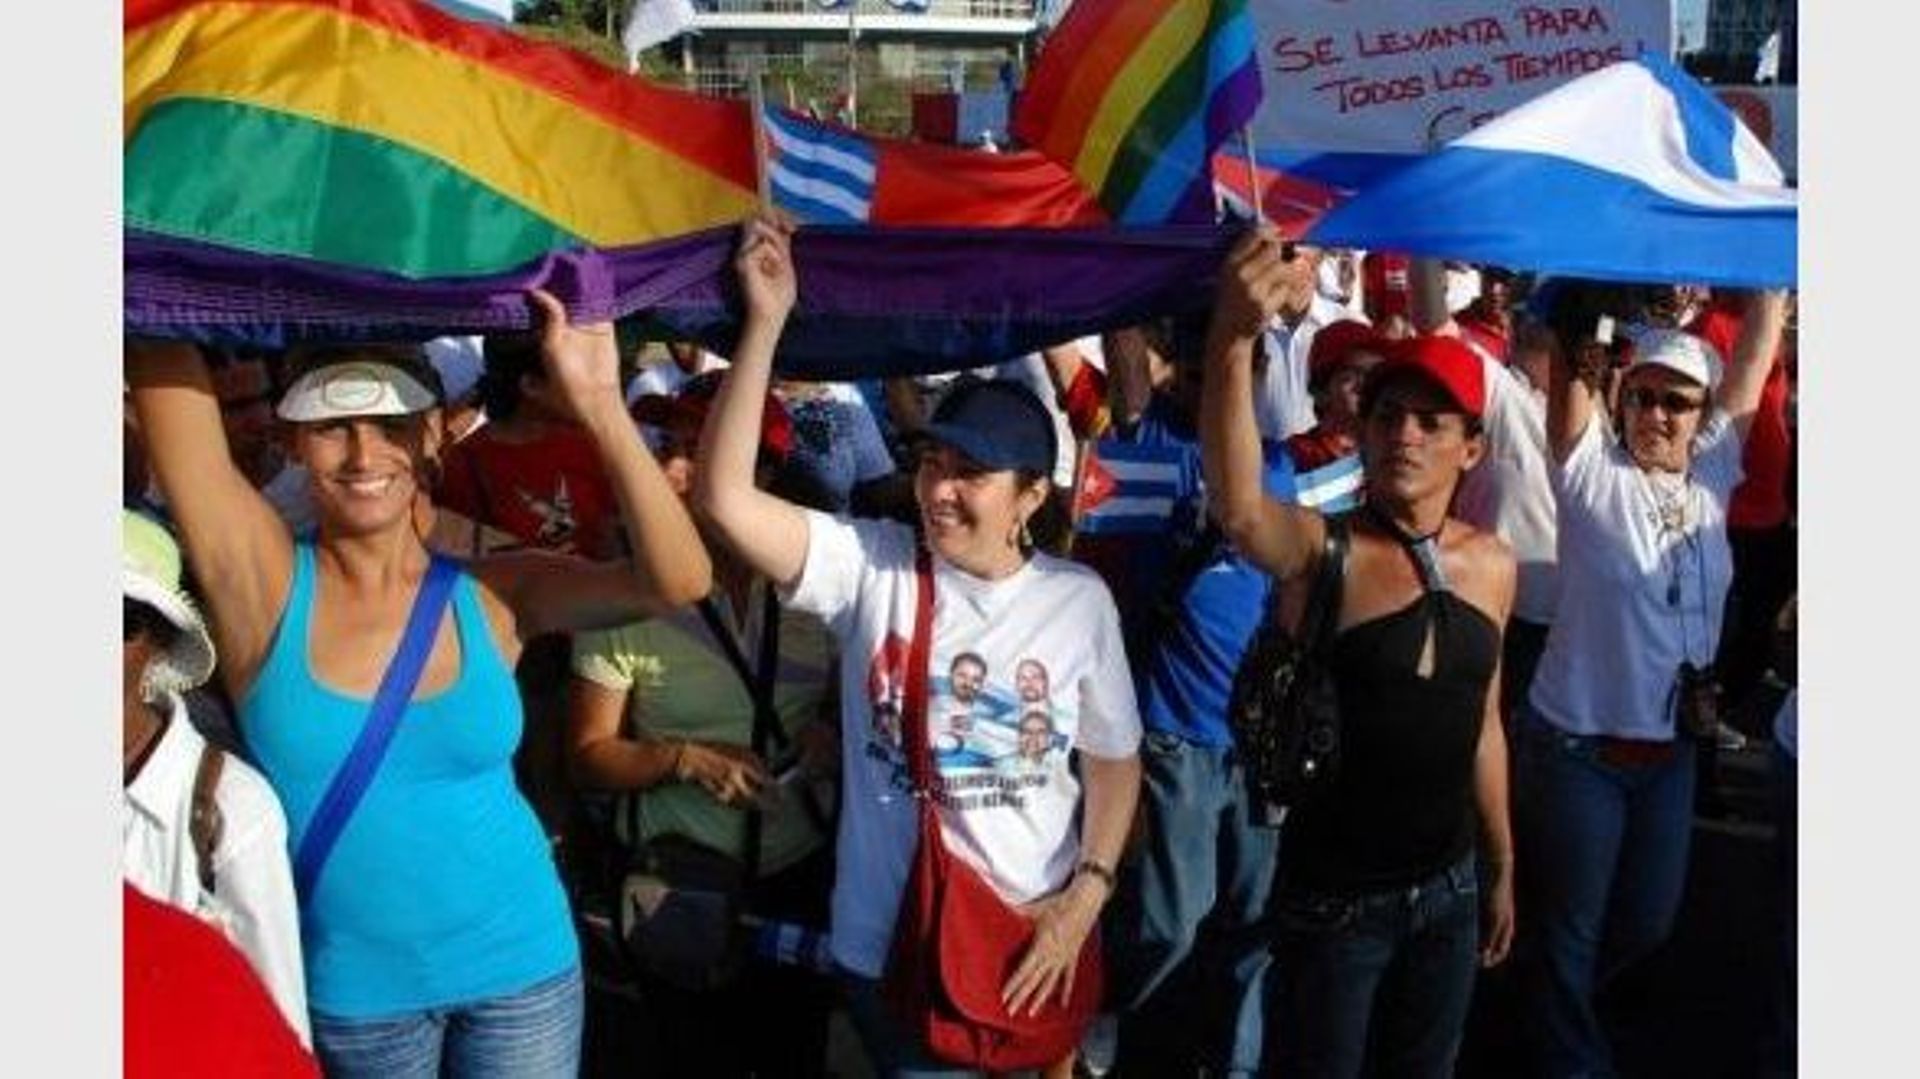 Mariela Castro, fille du président cubain Raul Castro (C) participe aux fêtes de mai avec un groupe d'homosexuelles, le 1er mai 2011 à La Havane.